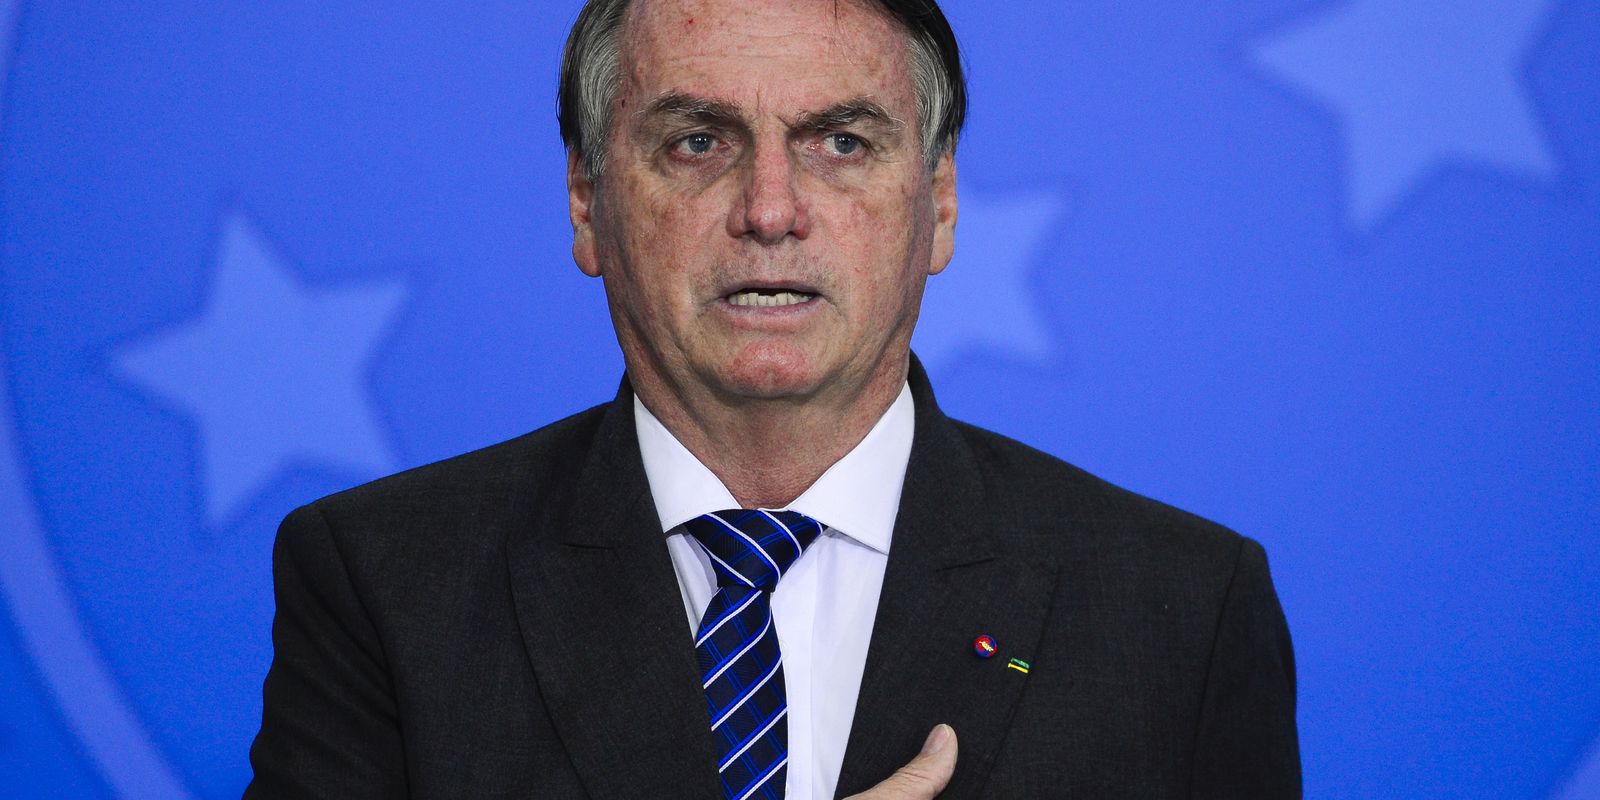 O governo federal lança o Novo Marco de Garantias em cerimônia no Palácio do Planalto com a presença do presidente Jair Bolsonaro.